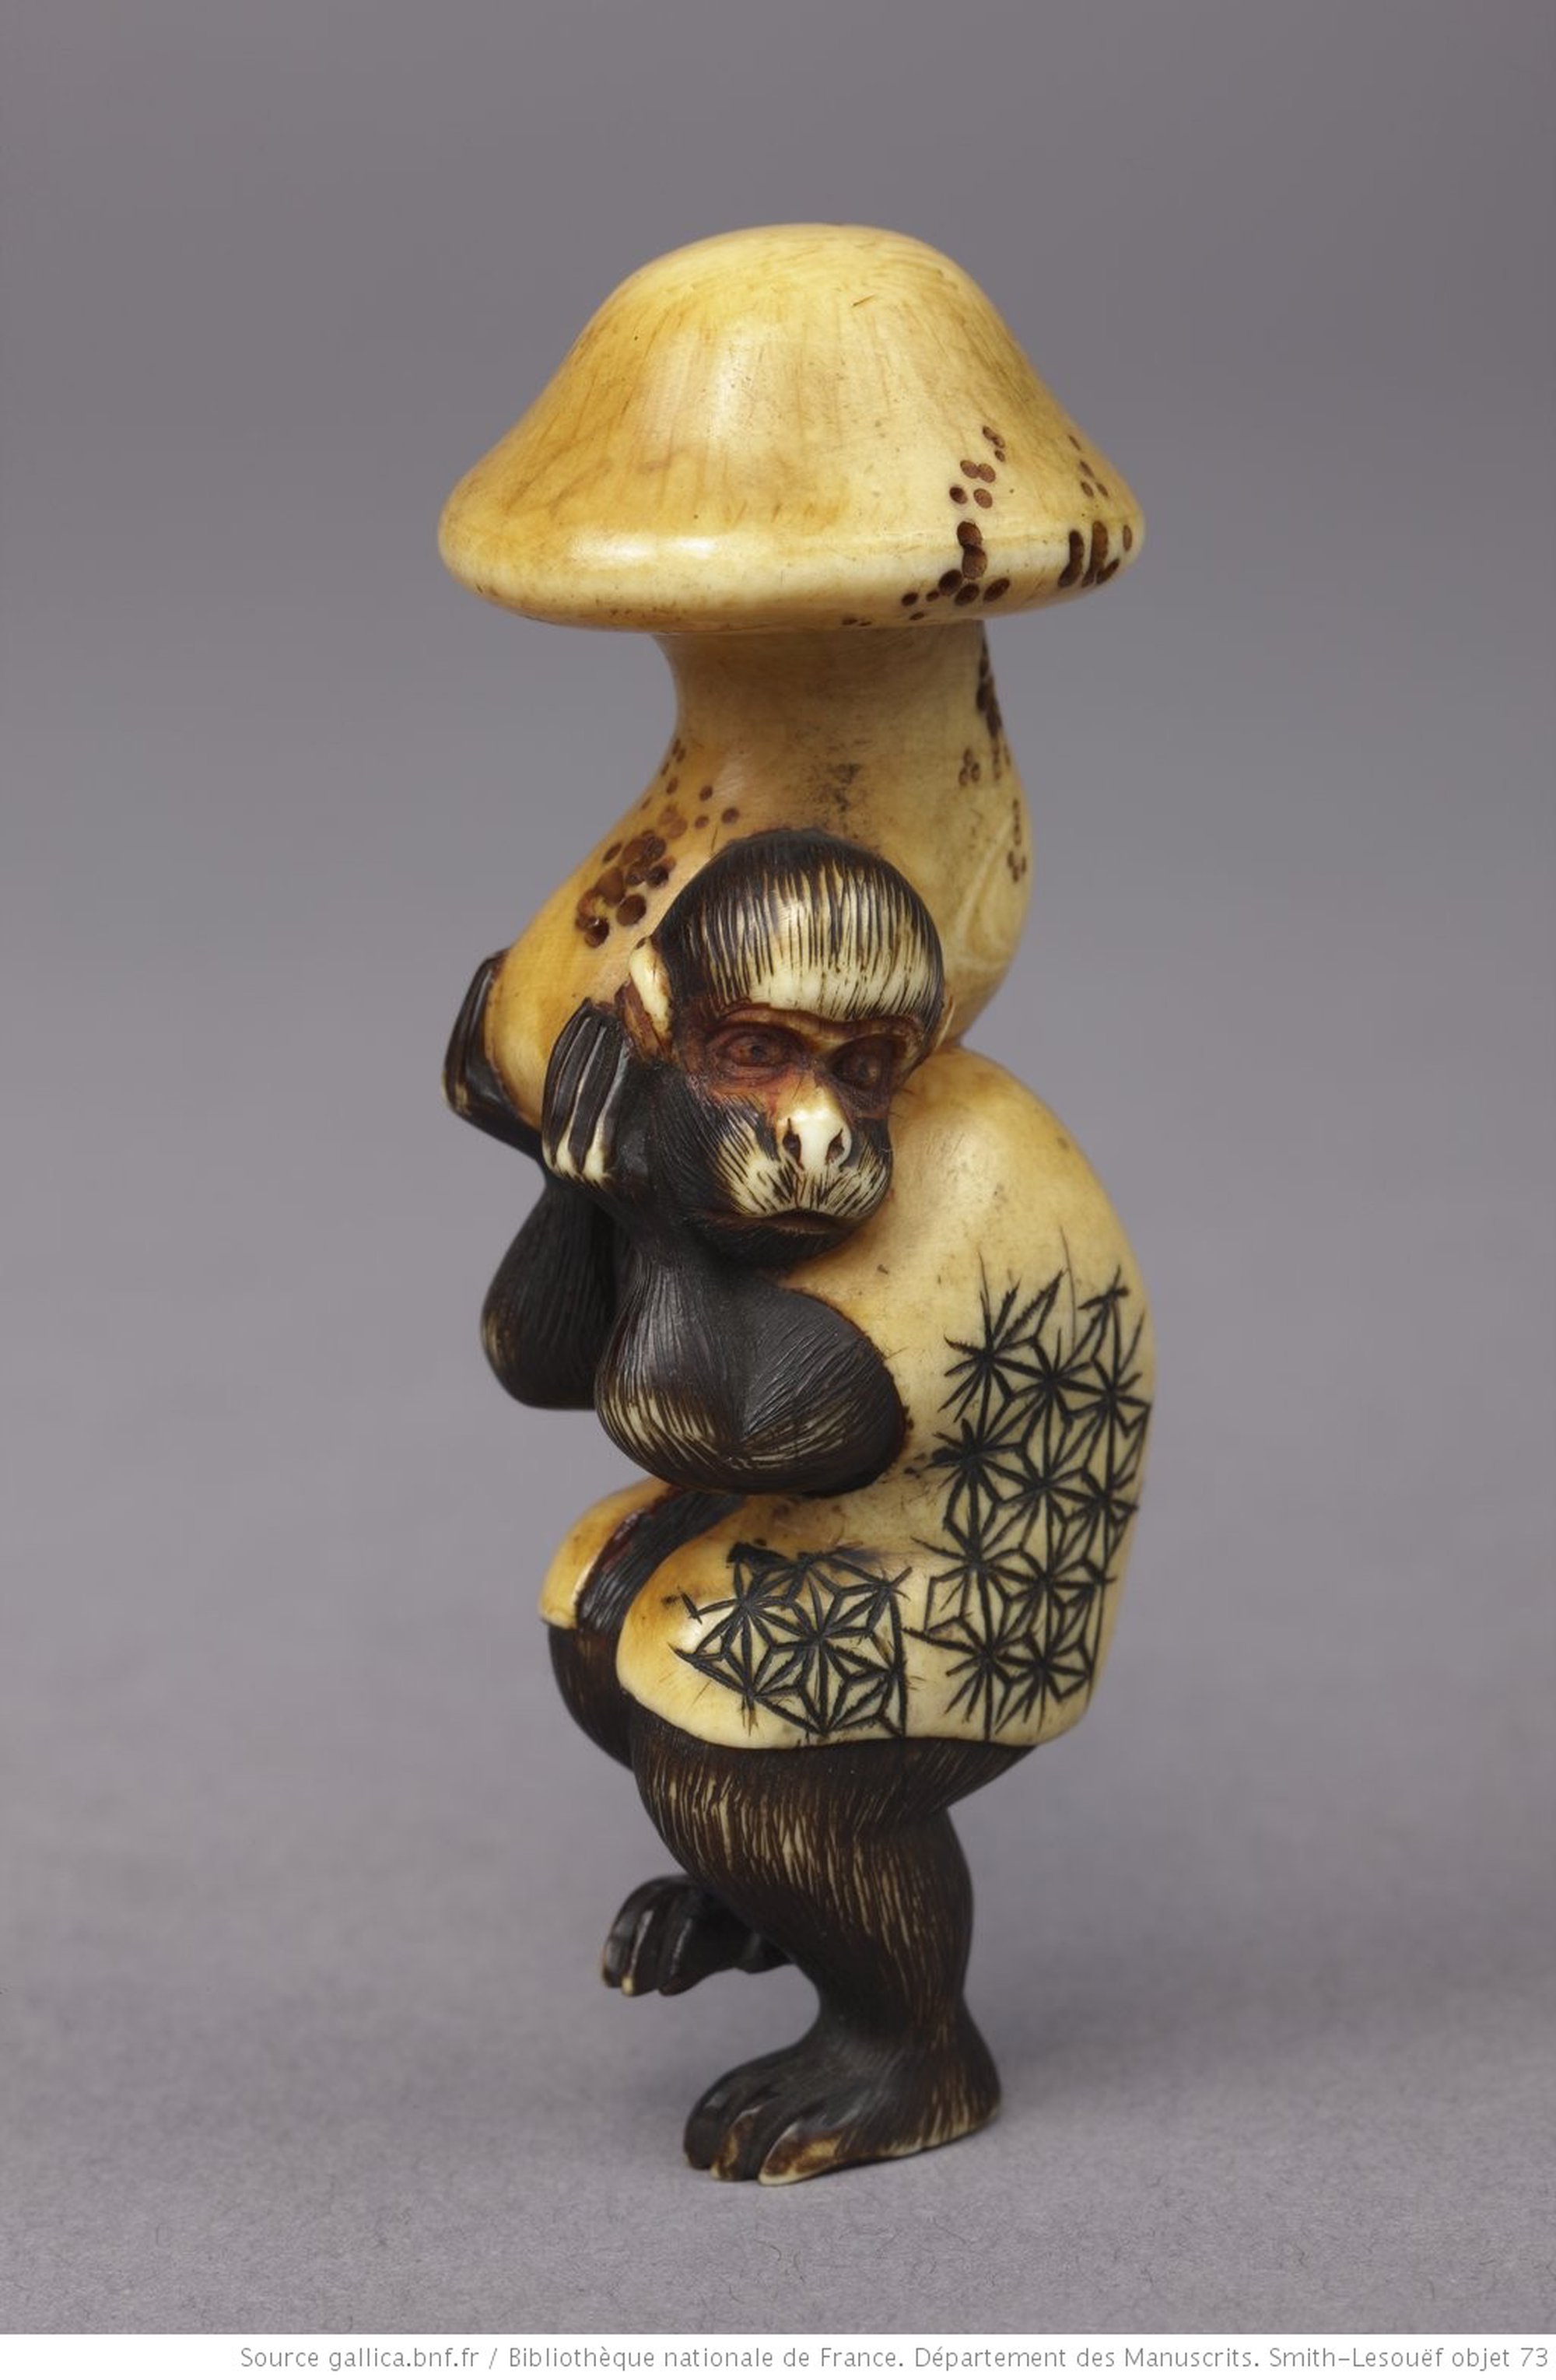 Netsuke de marfim japonês, sec. XVII ? (BnF, Paris)